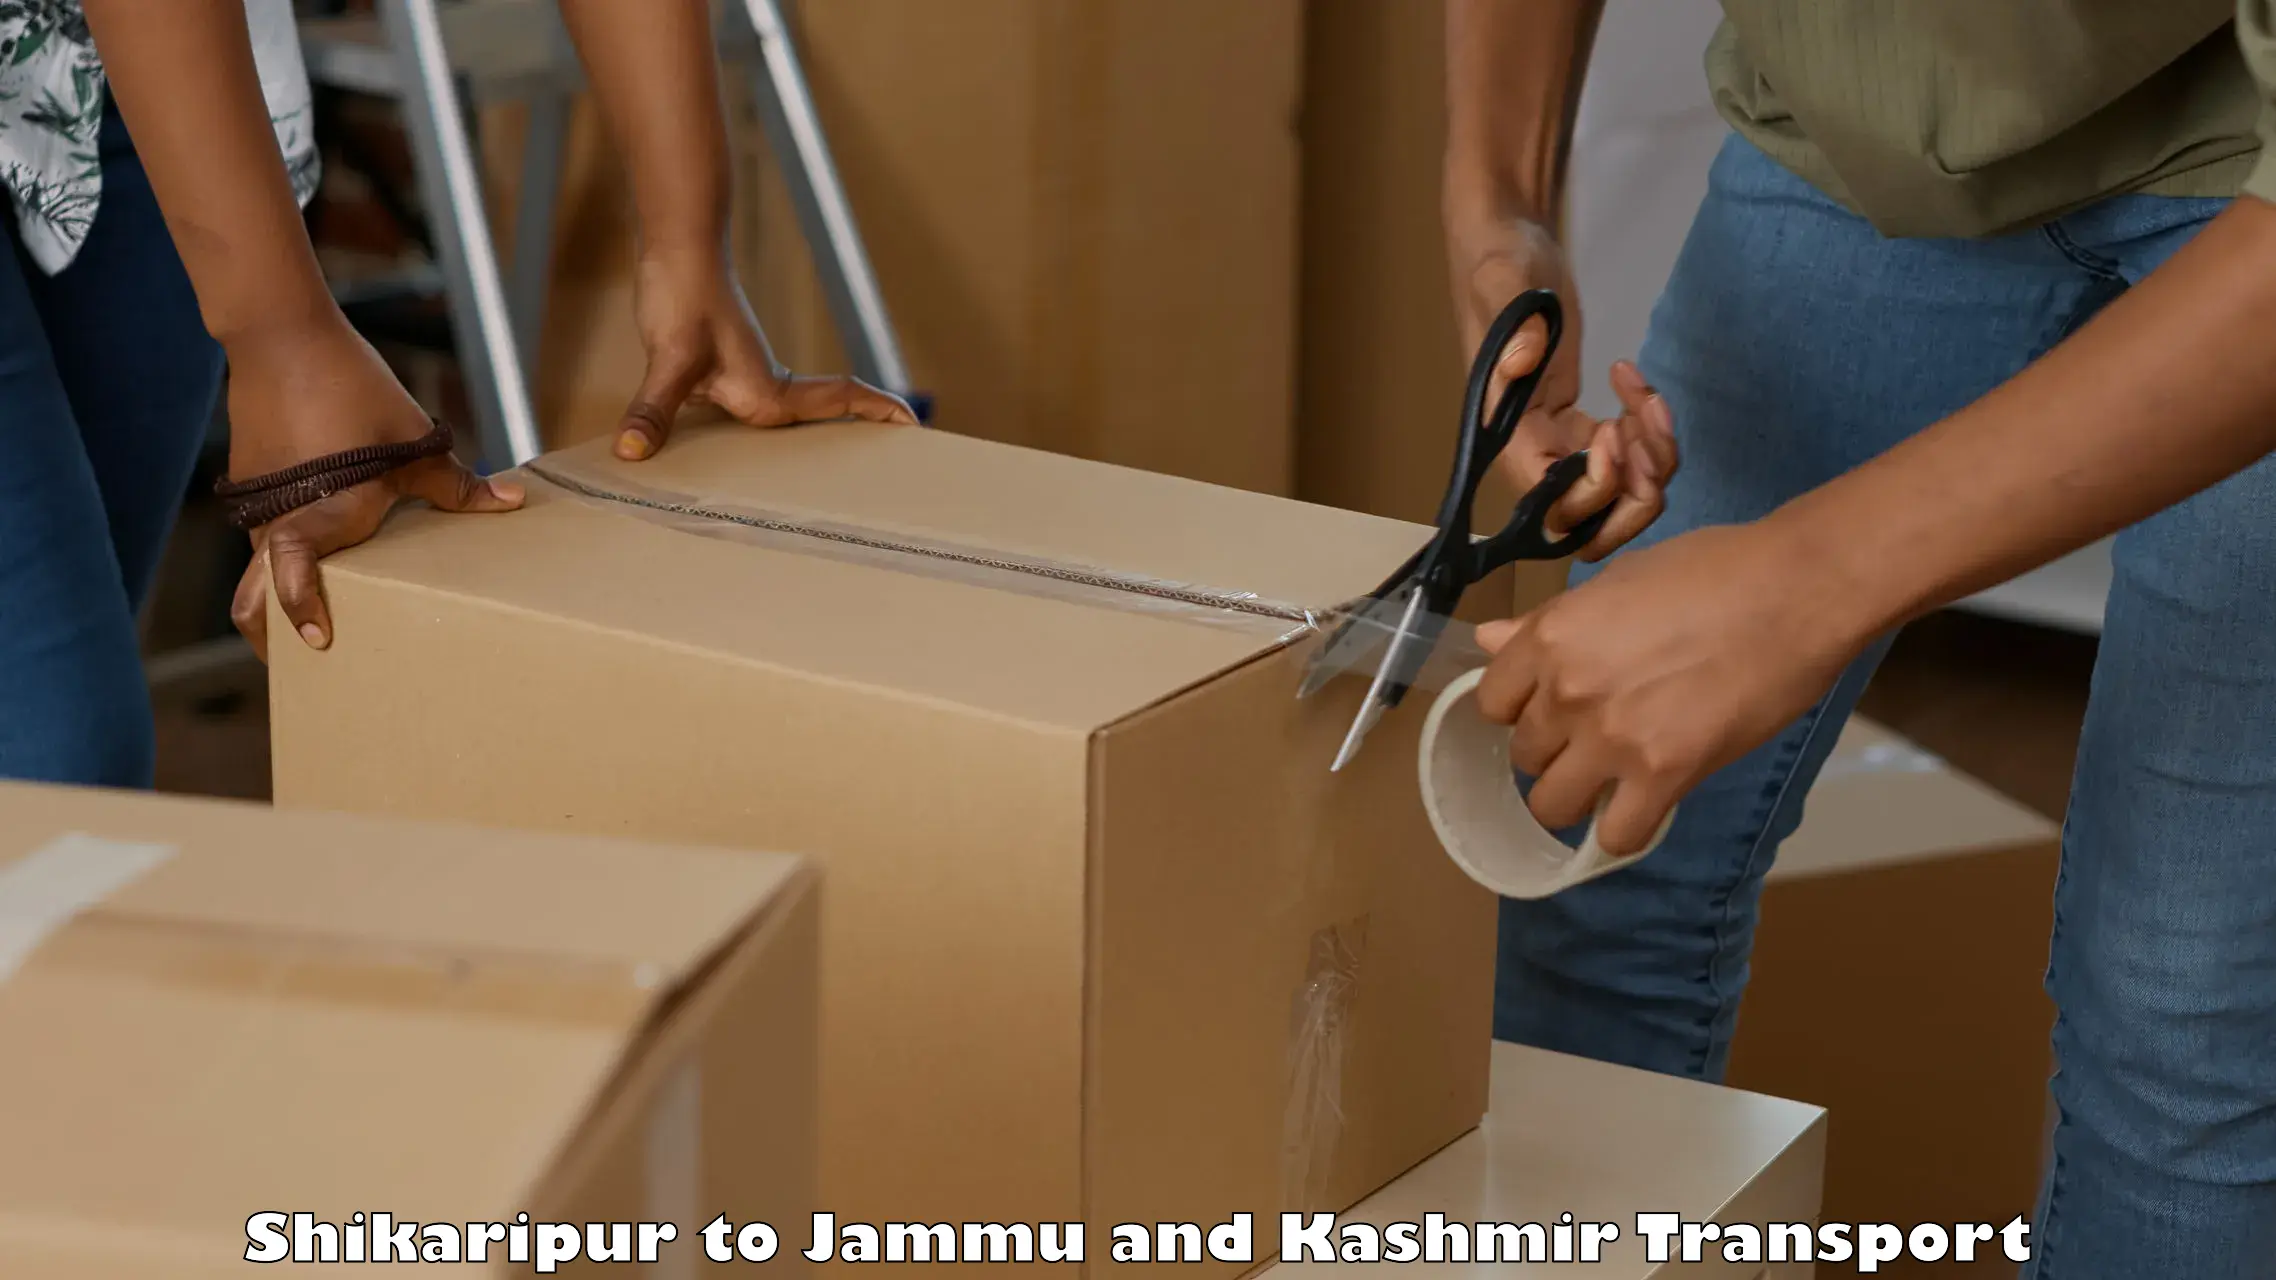 Logistics transportation services Shikaripur to Srinagar Kashmir